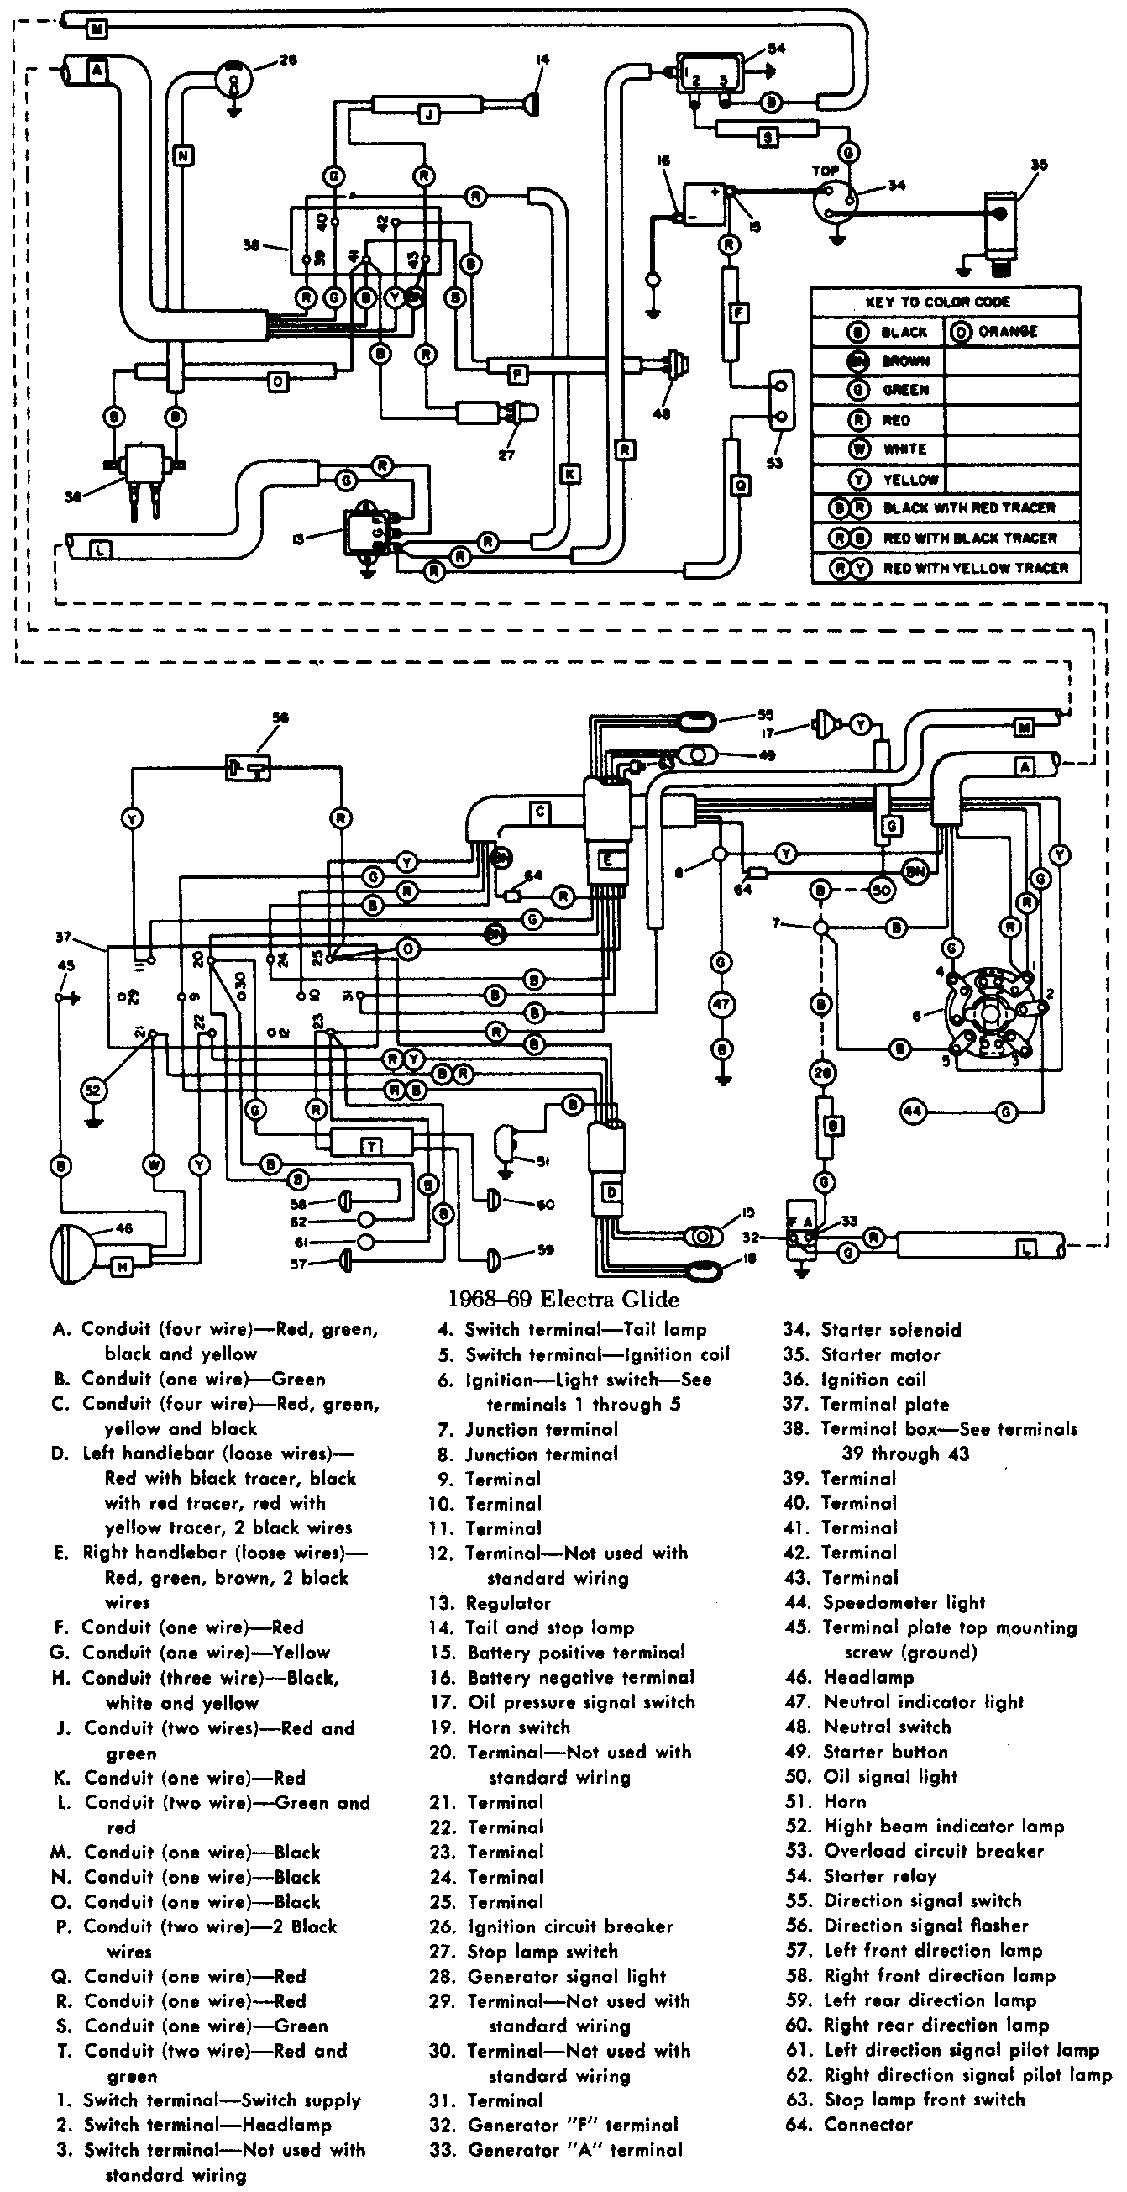 harley tail light wiring diagram wiring diagrams value harley light wiring diagram